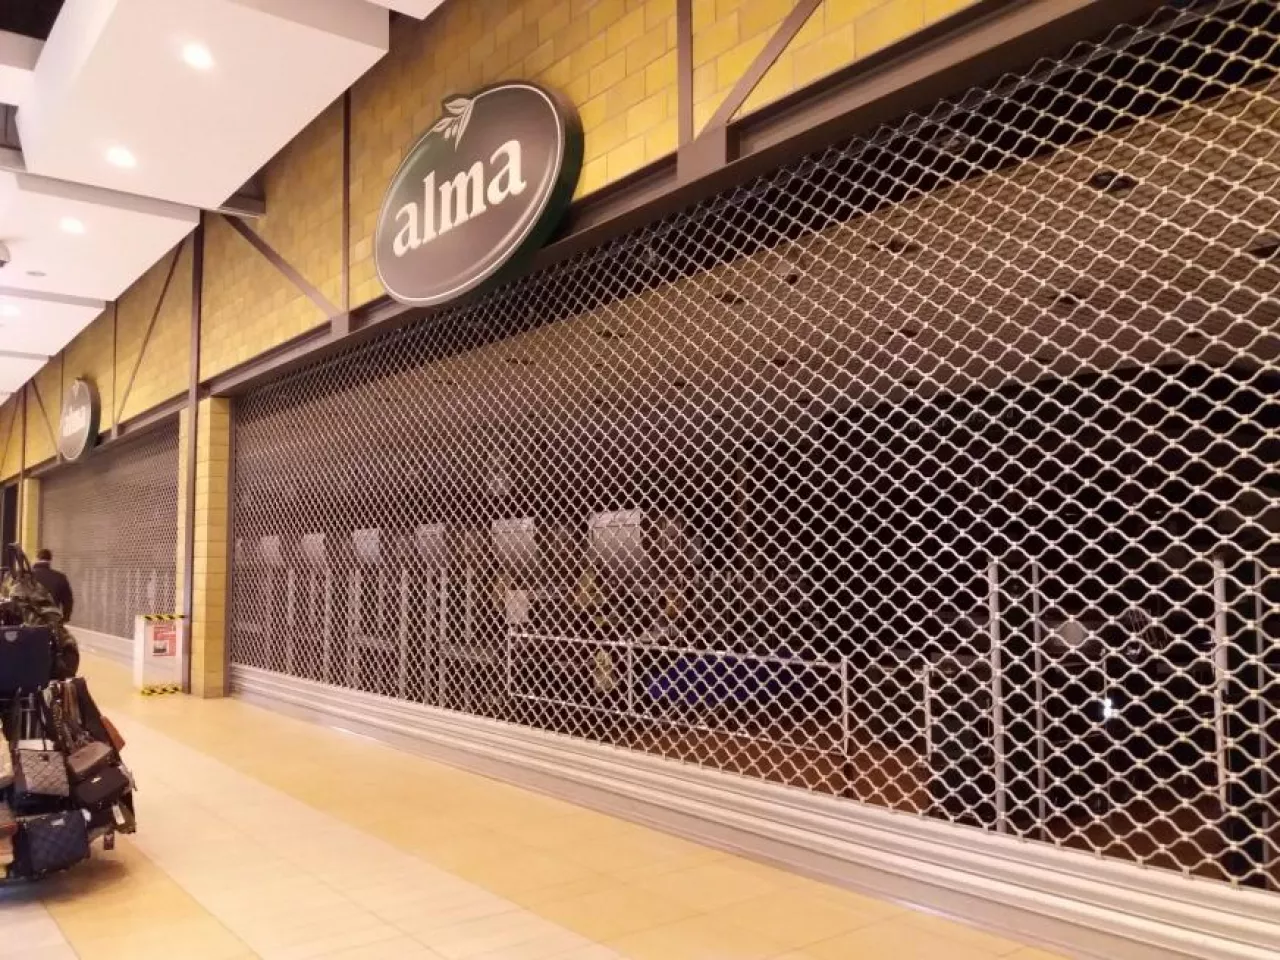 Zamknięty sklep sieci Delikatesów Alma (materiały własne)